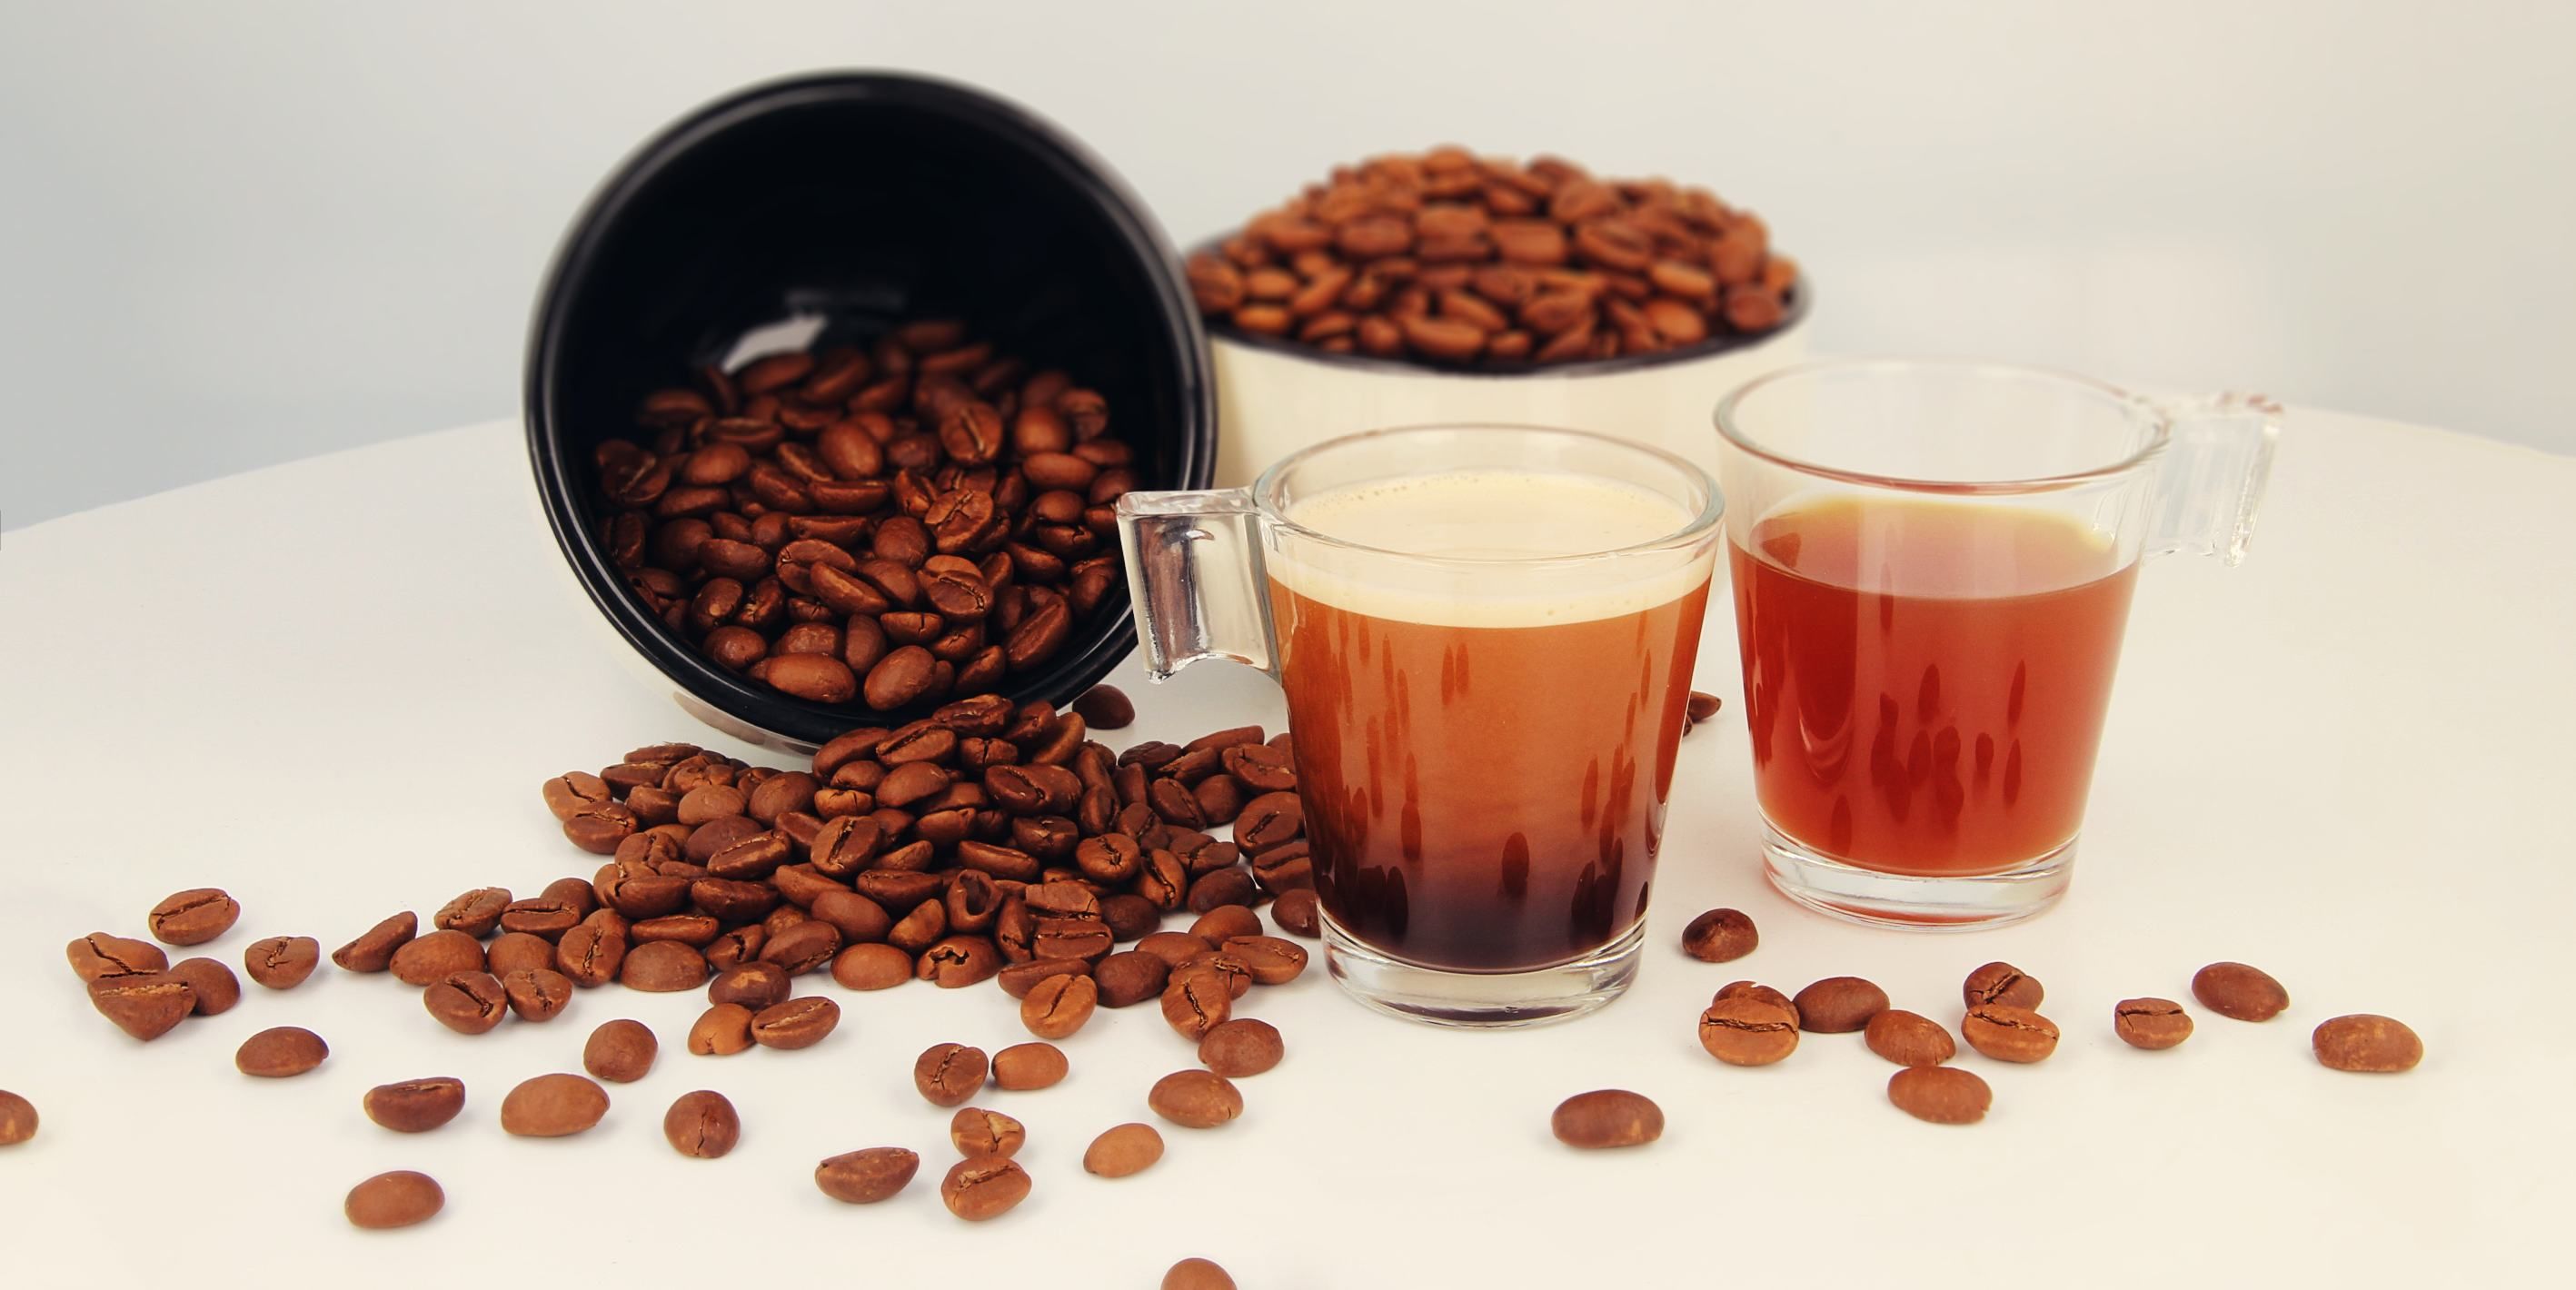 Das Bild zeigt zwei Tassen Kaffee und zwei Schüsseln mit Kaffeebohnen